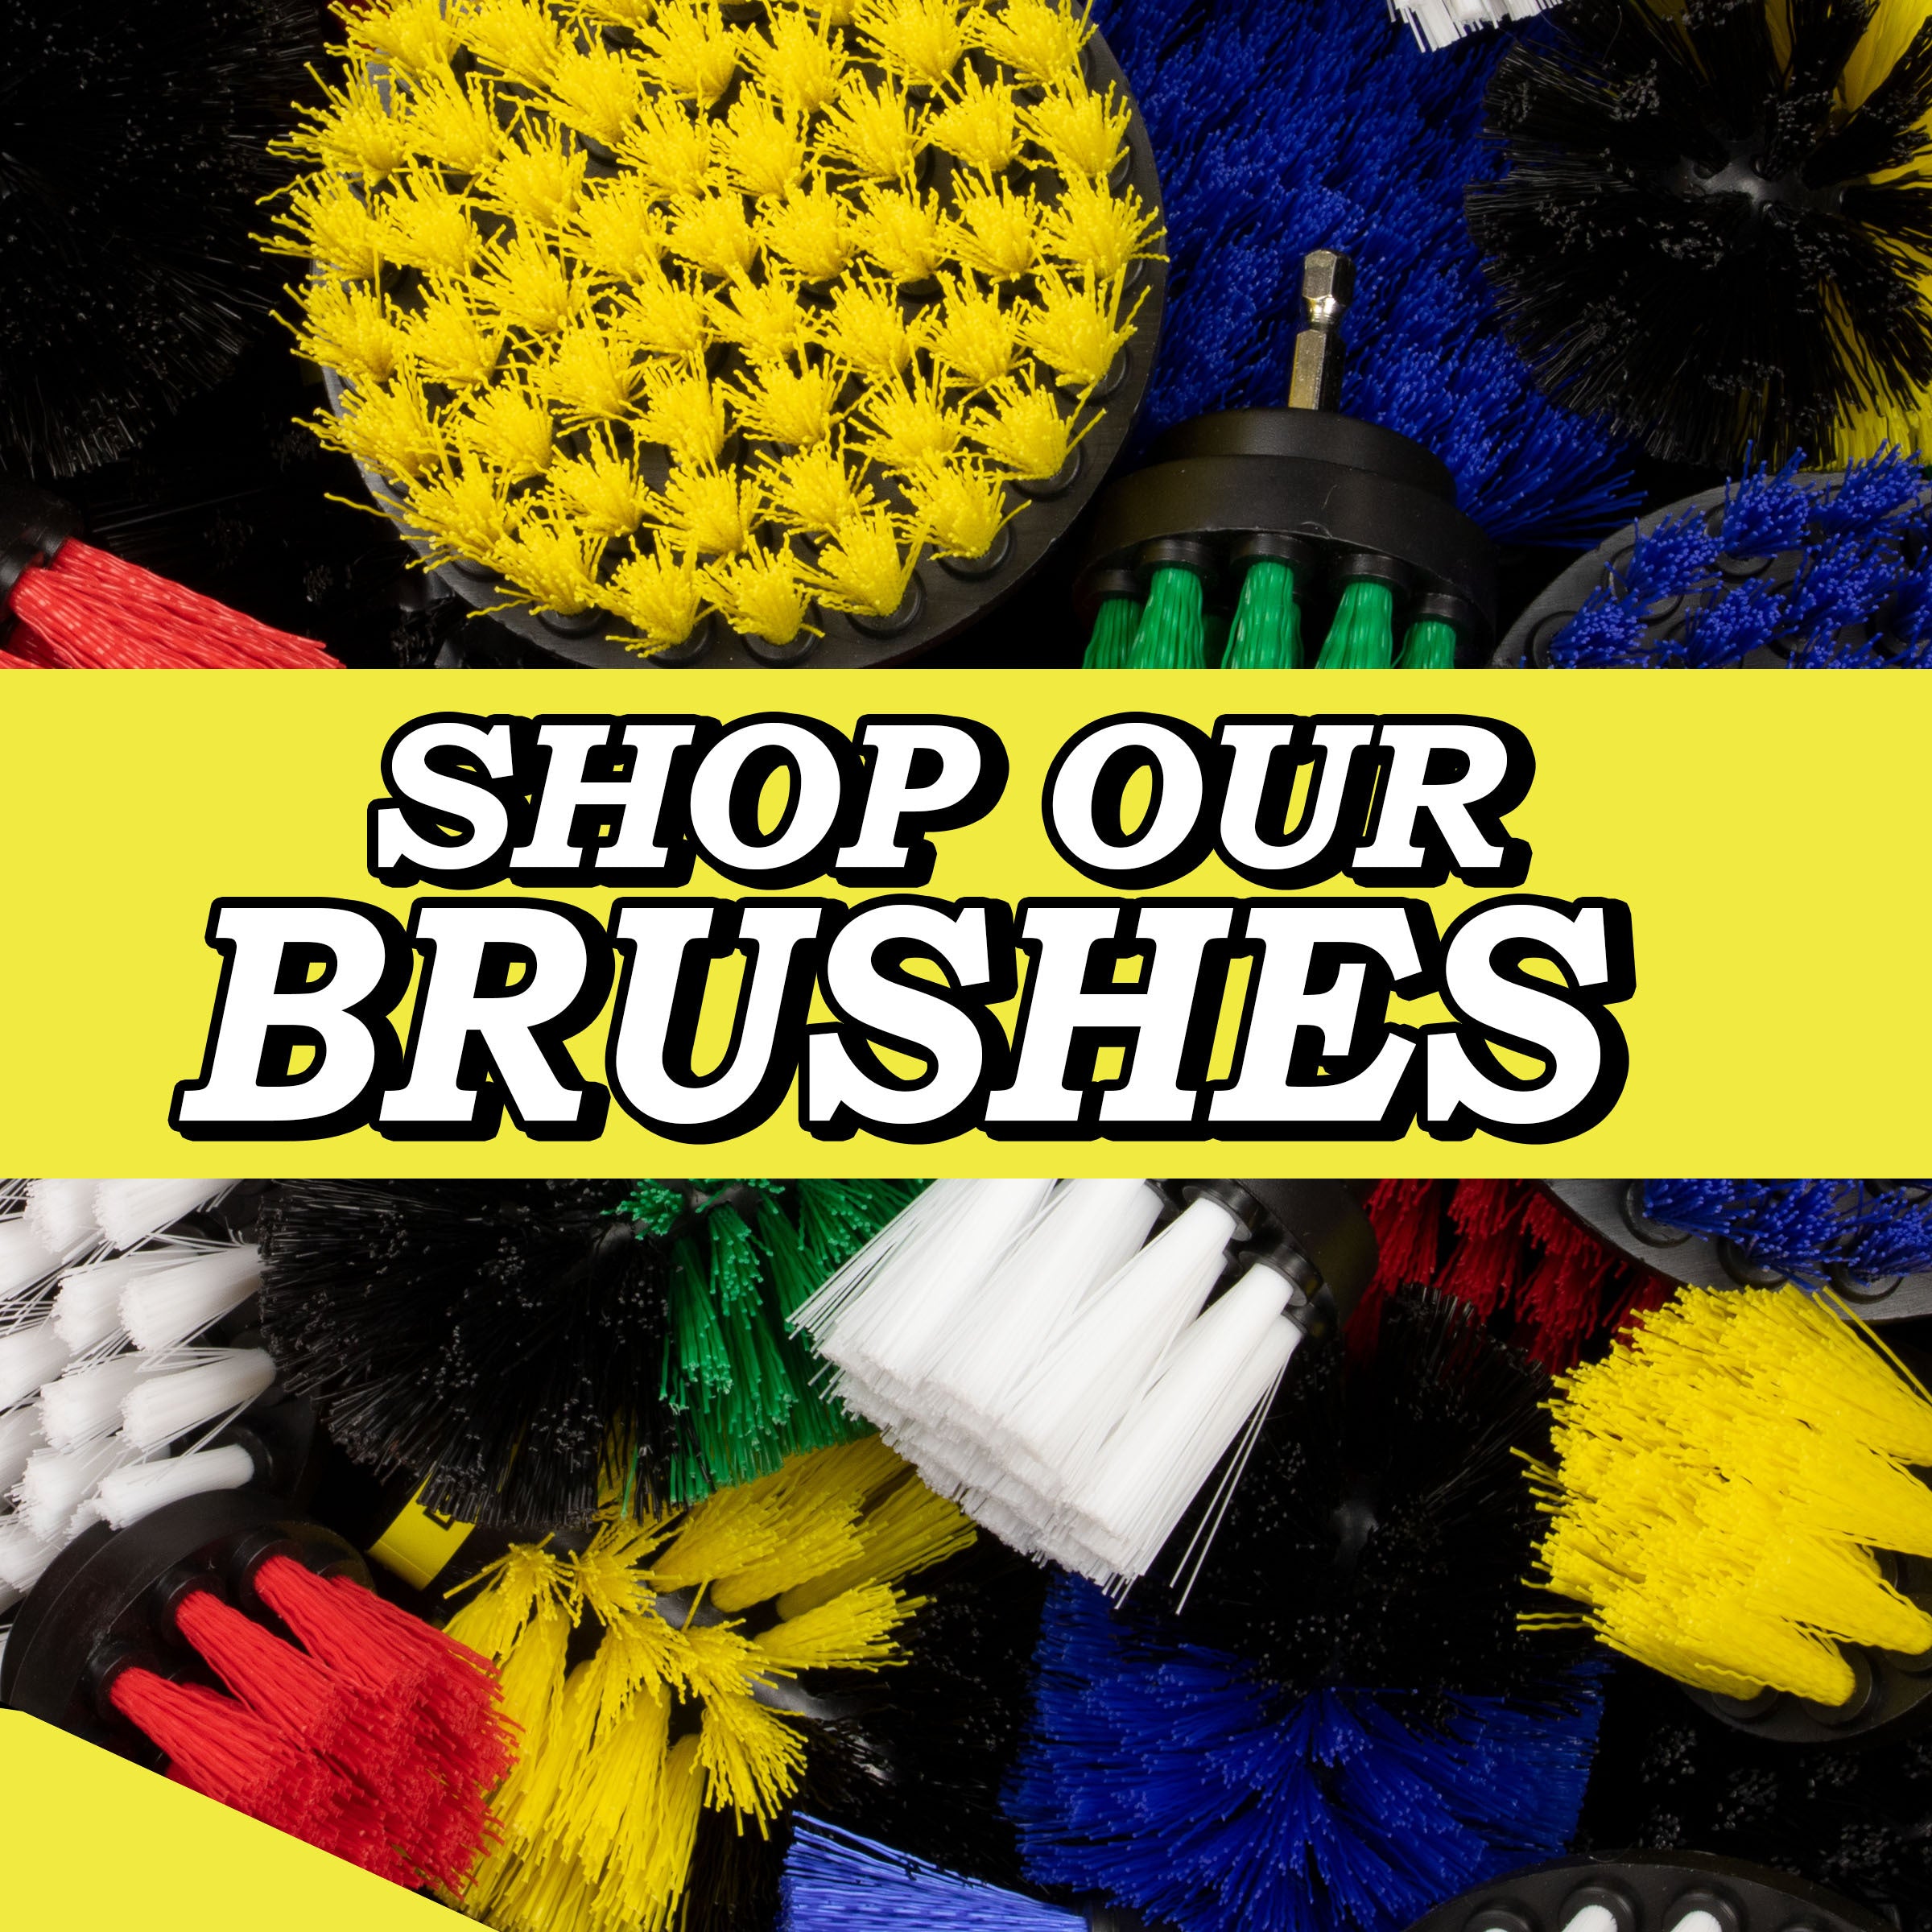 Brushes and Brush Kits – Drillbrush